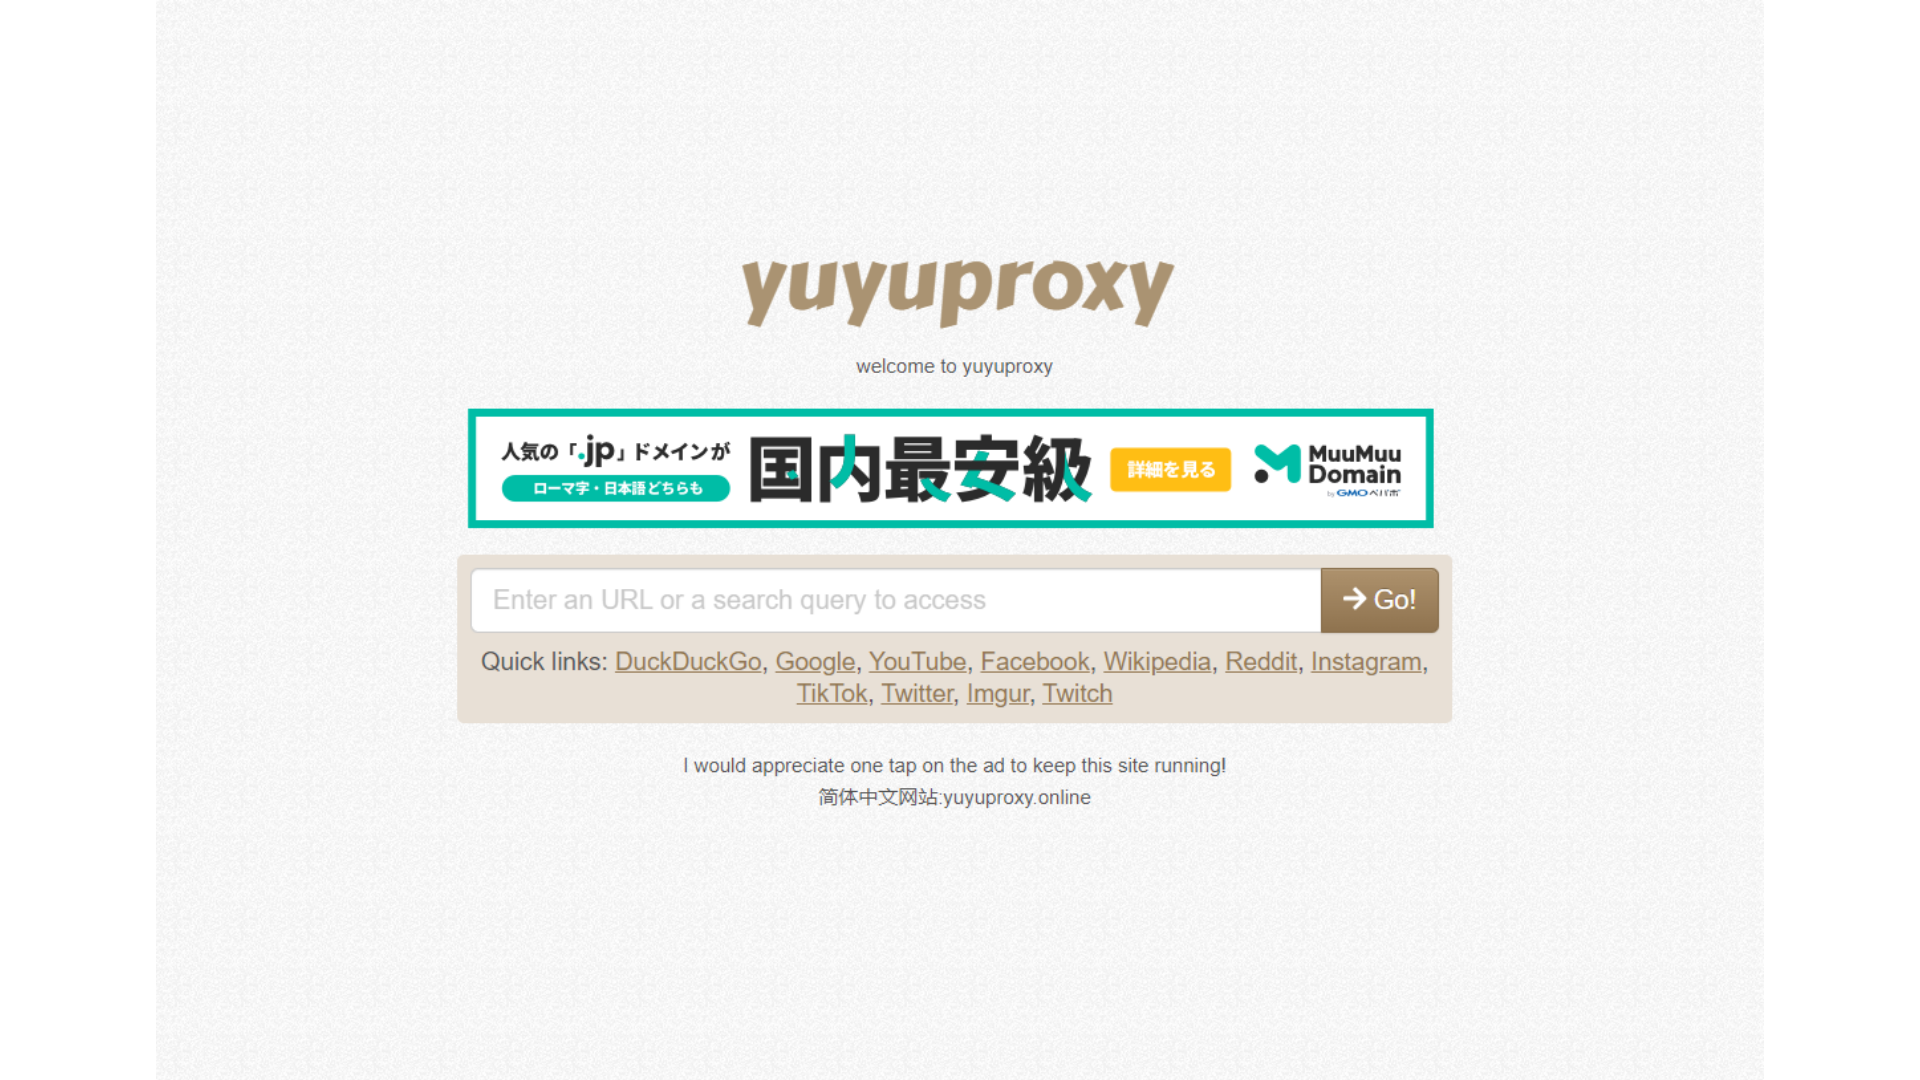 Yuyu proxy